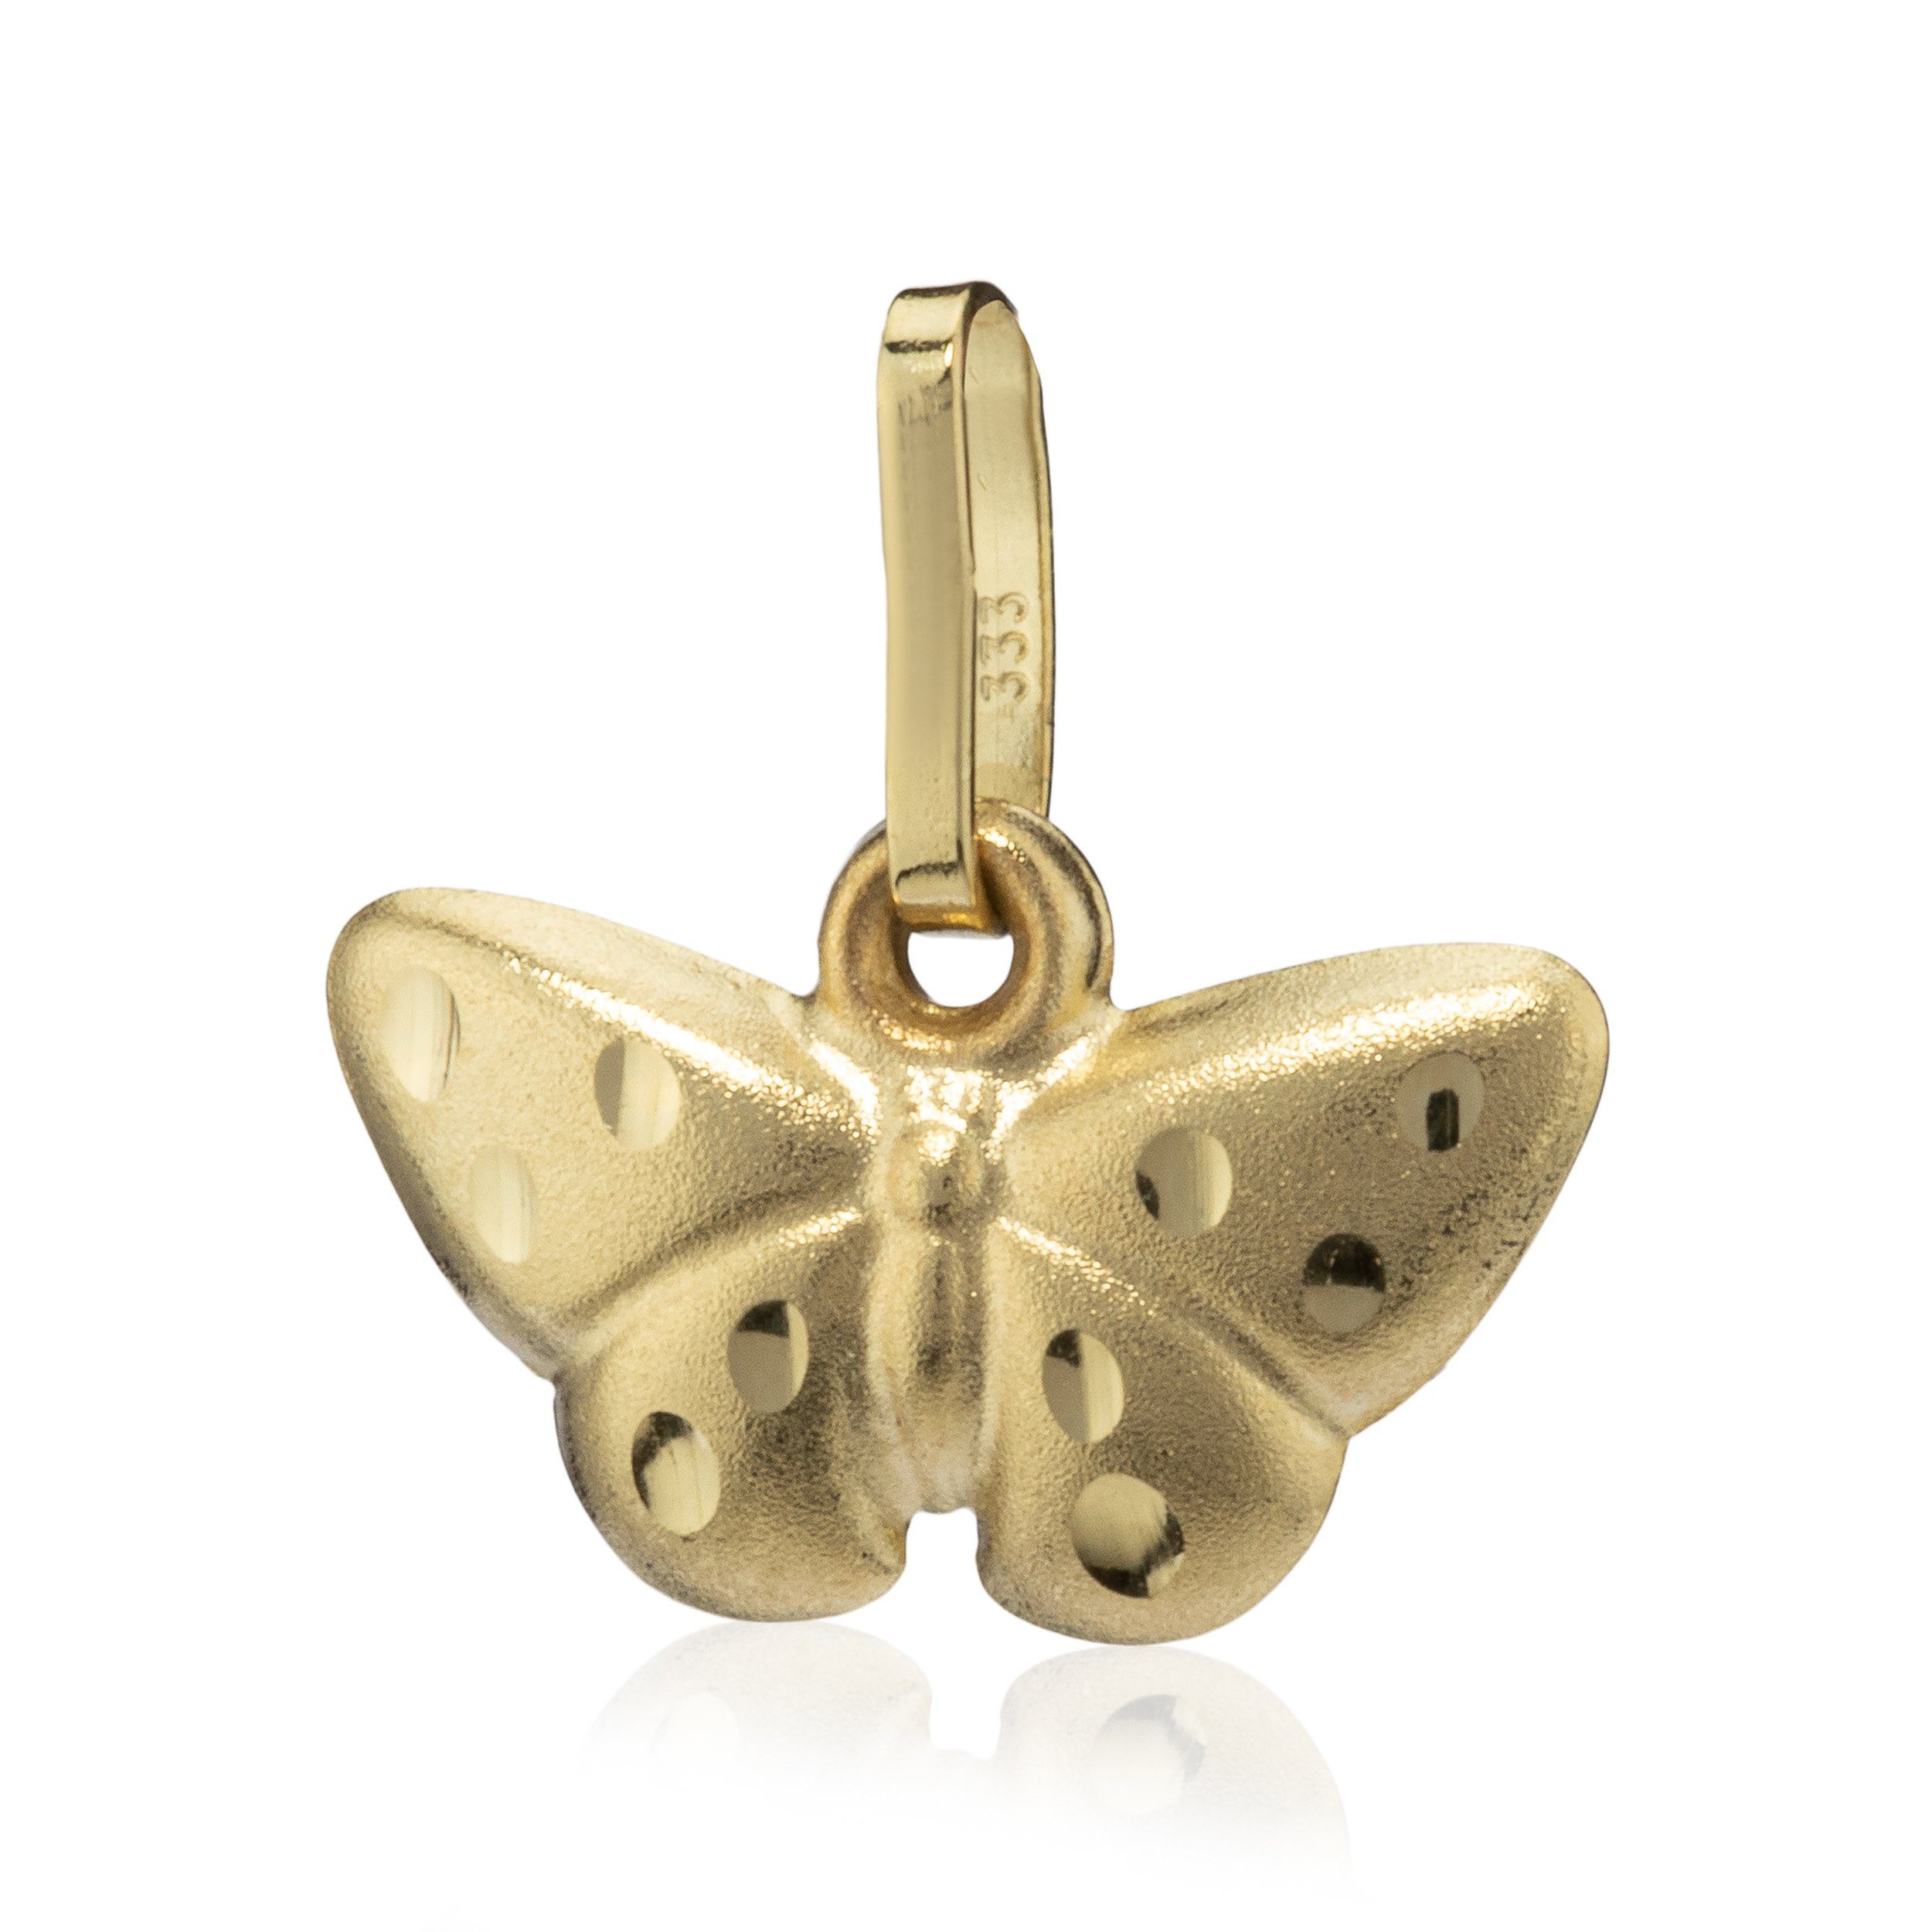 NKlaus Kettenanhänger Schmetterling klein 333 Gelb Gold Teildiamantiert